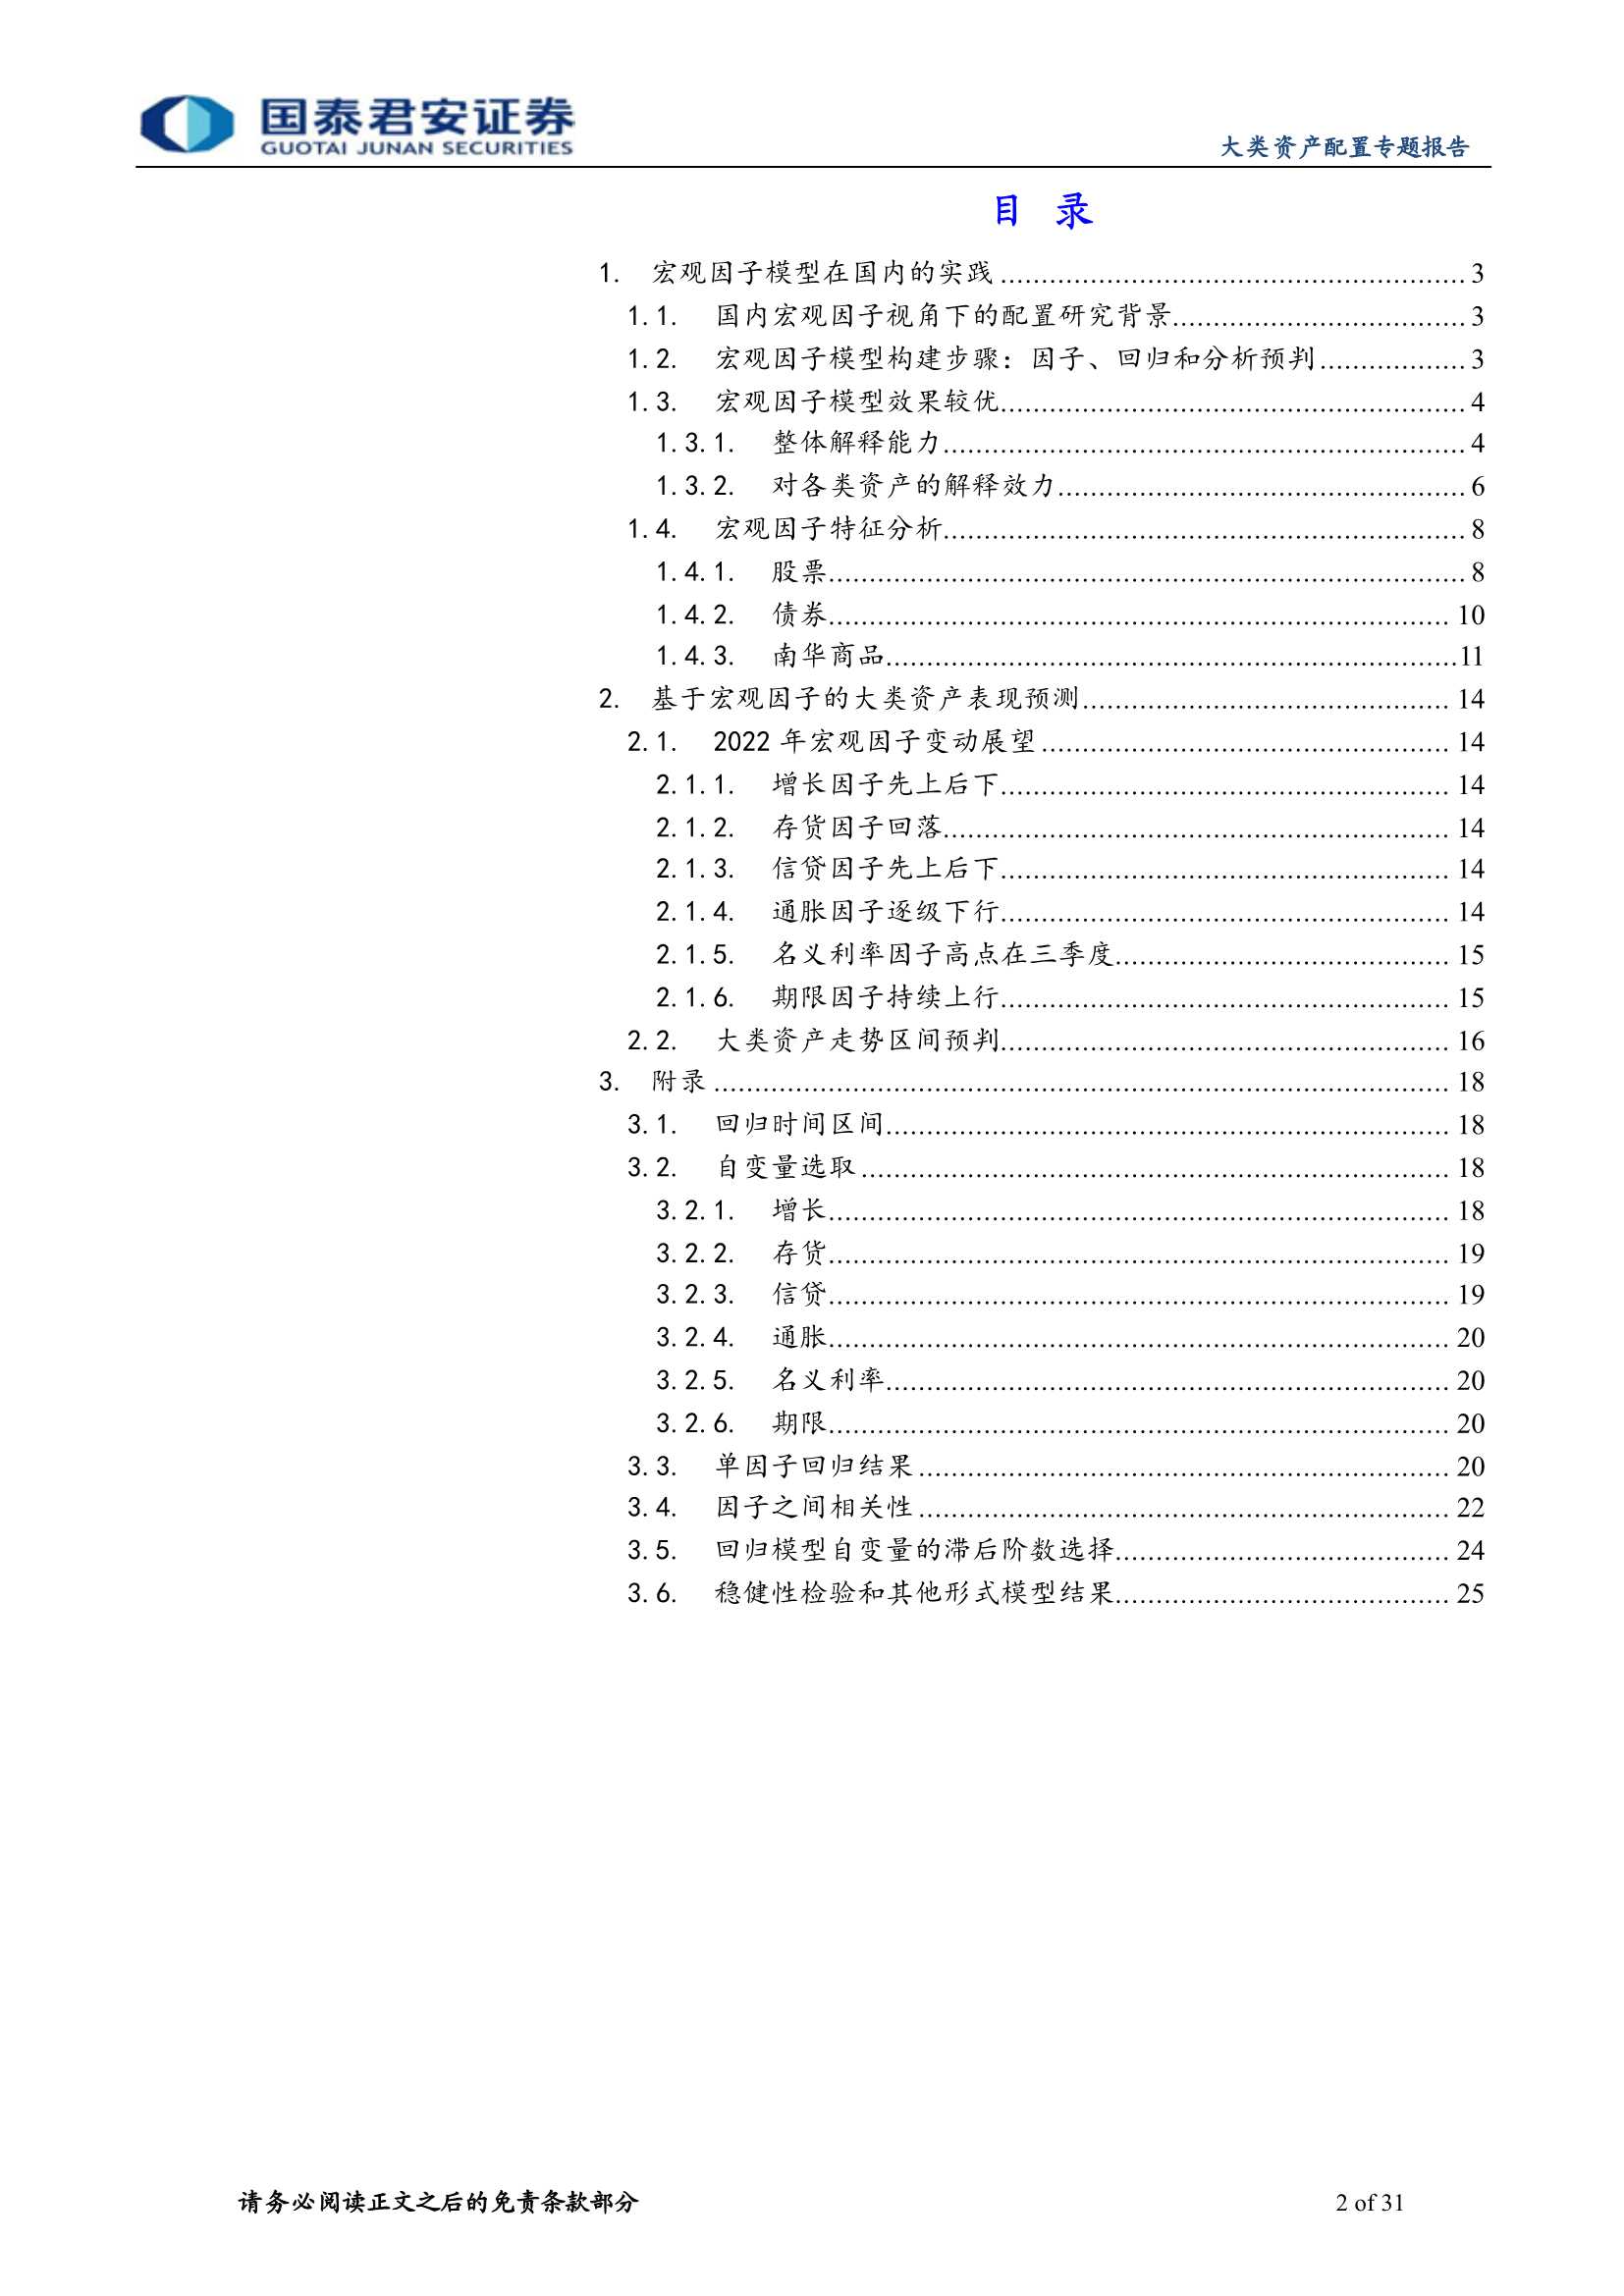 国泰君安-基于宏观因子的大类资产回报解构-20220108-31页